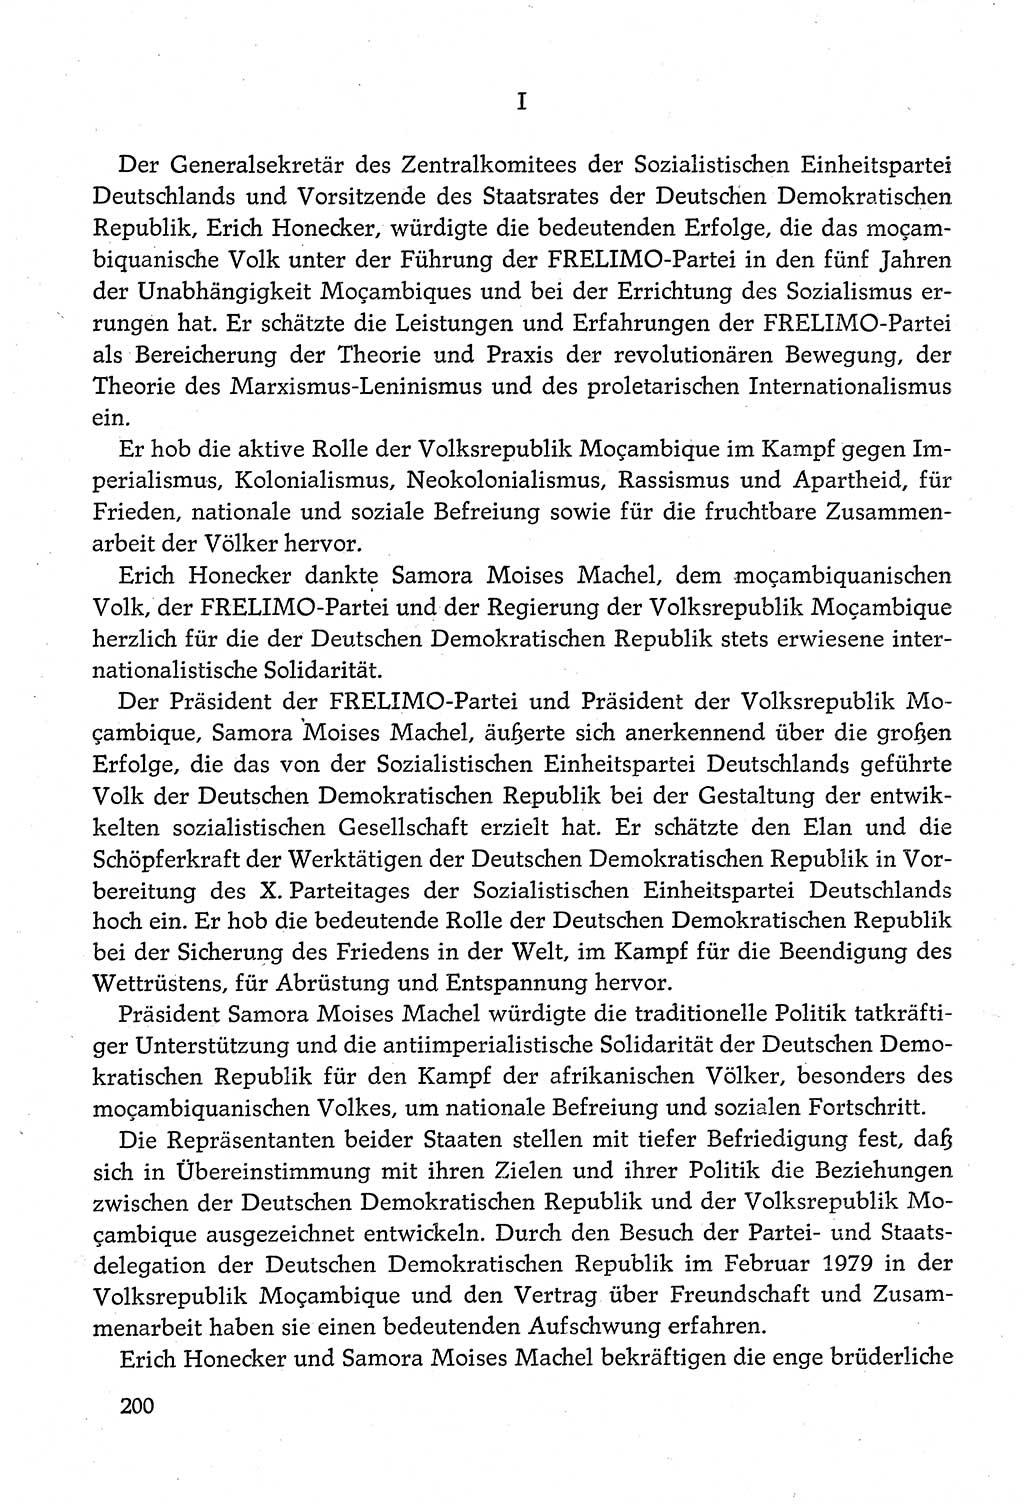 Dokumente der Sozialistischen Einheitspartei Deutschlands (SED) [Deutsche Demokratische Republik (DDR)] 1980-1981, Seite 200 (Dok. SED DDR 1980-1981, S. 200)